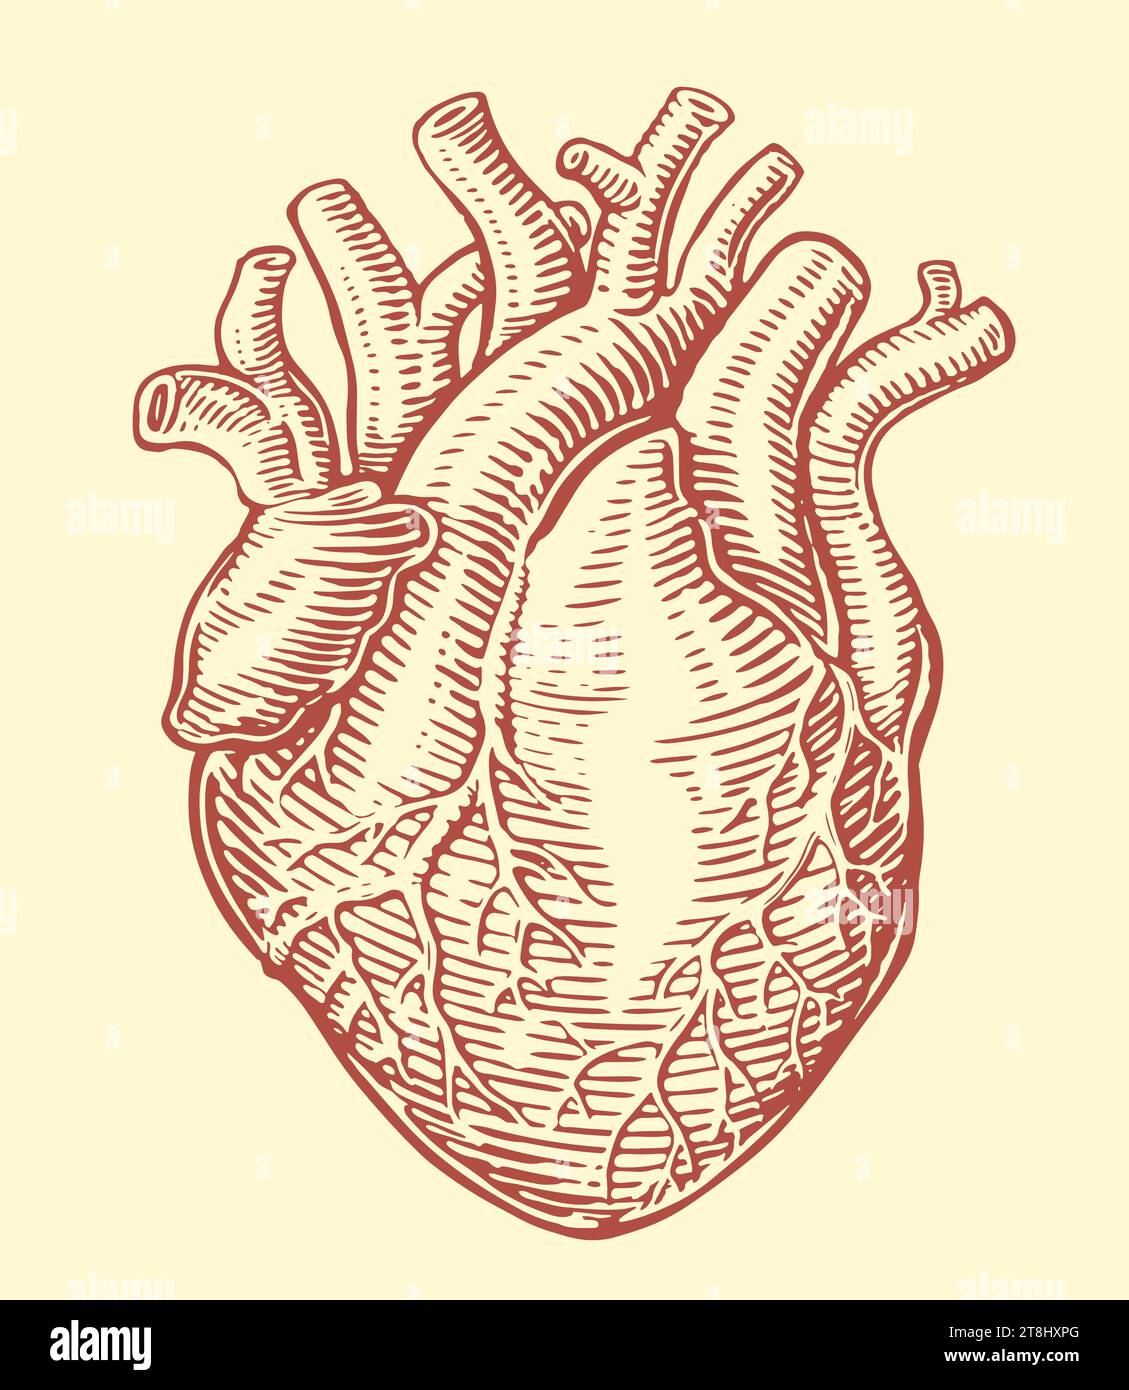 Coeur humain avec système veineux anatomique. Illustration vectorielle vintage dessinée à la main Illustration de Vecteur